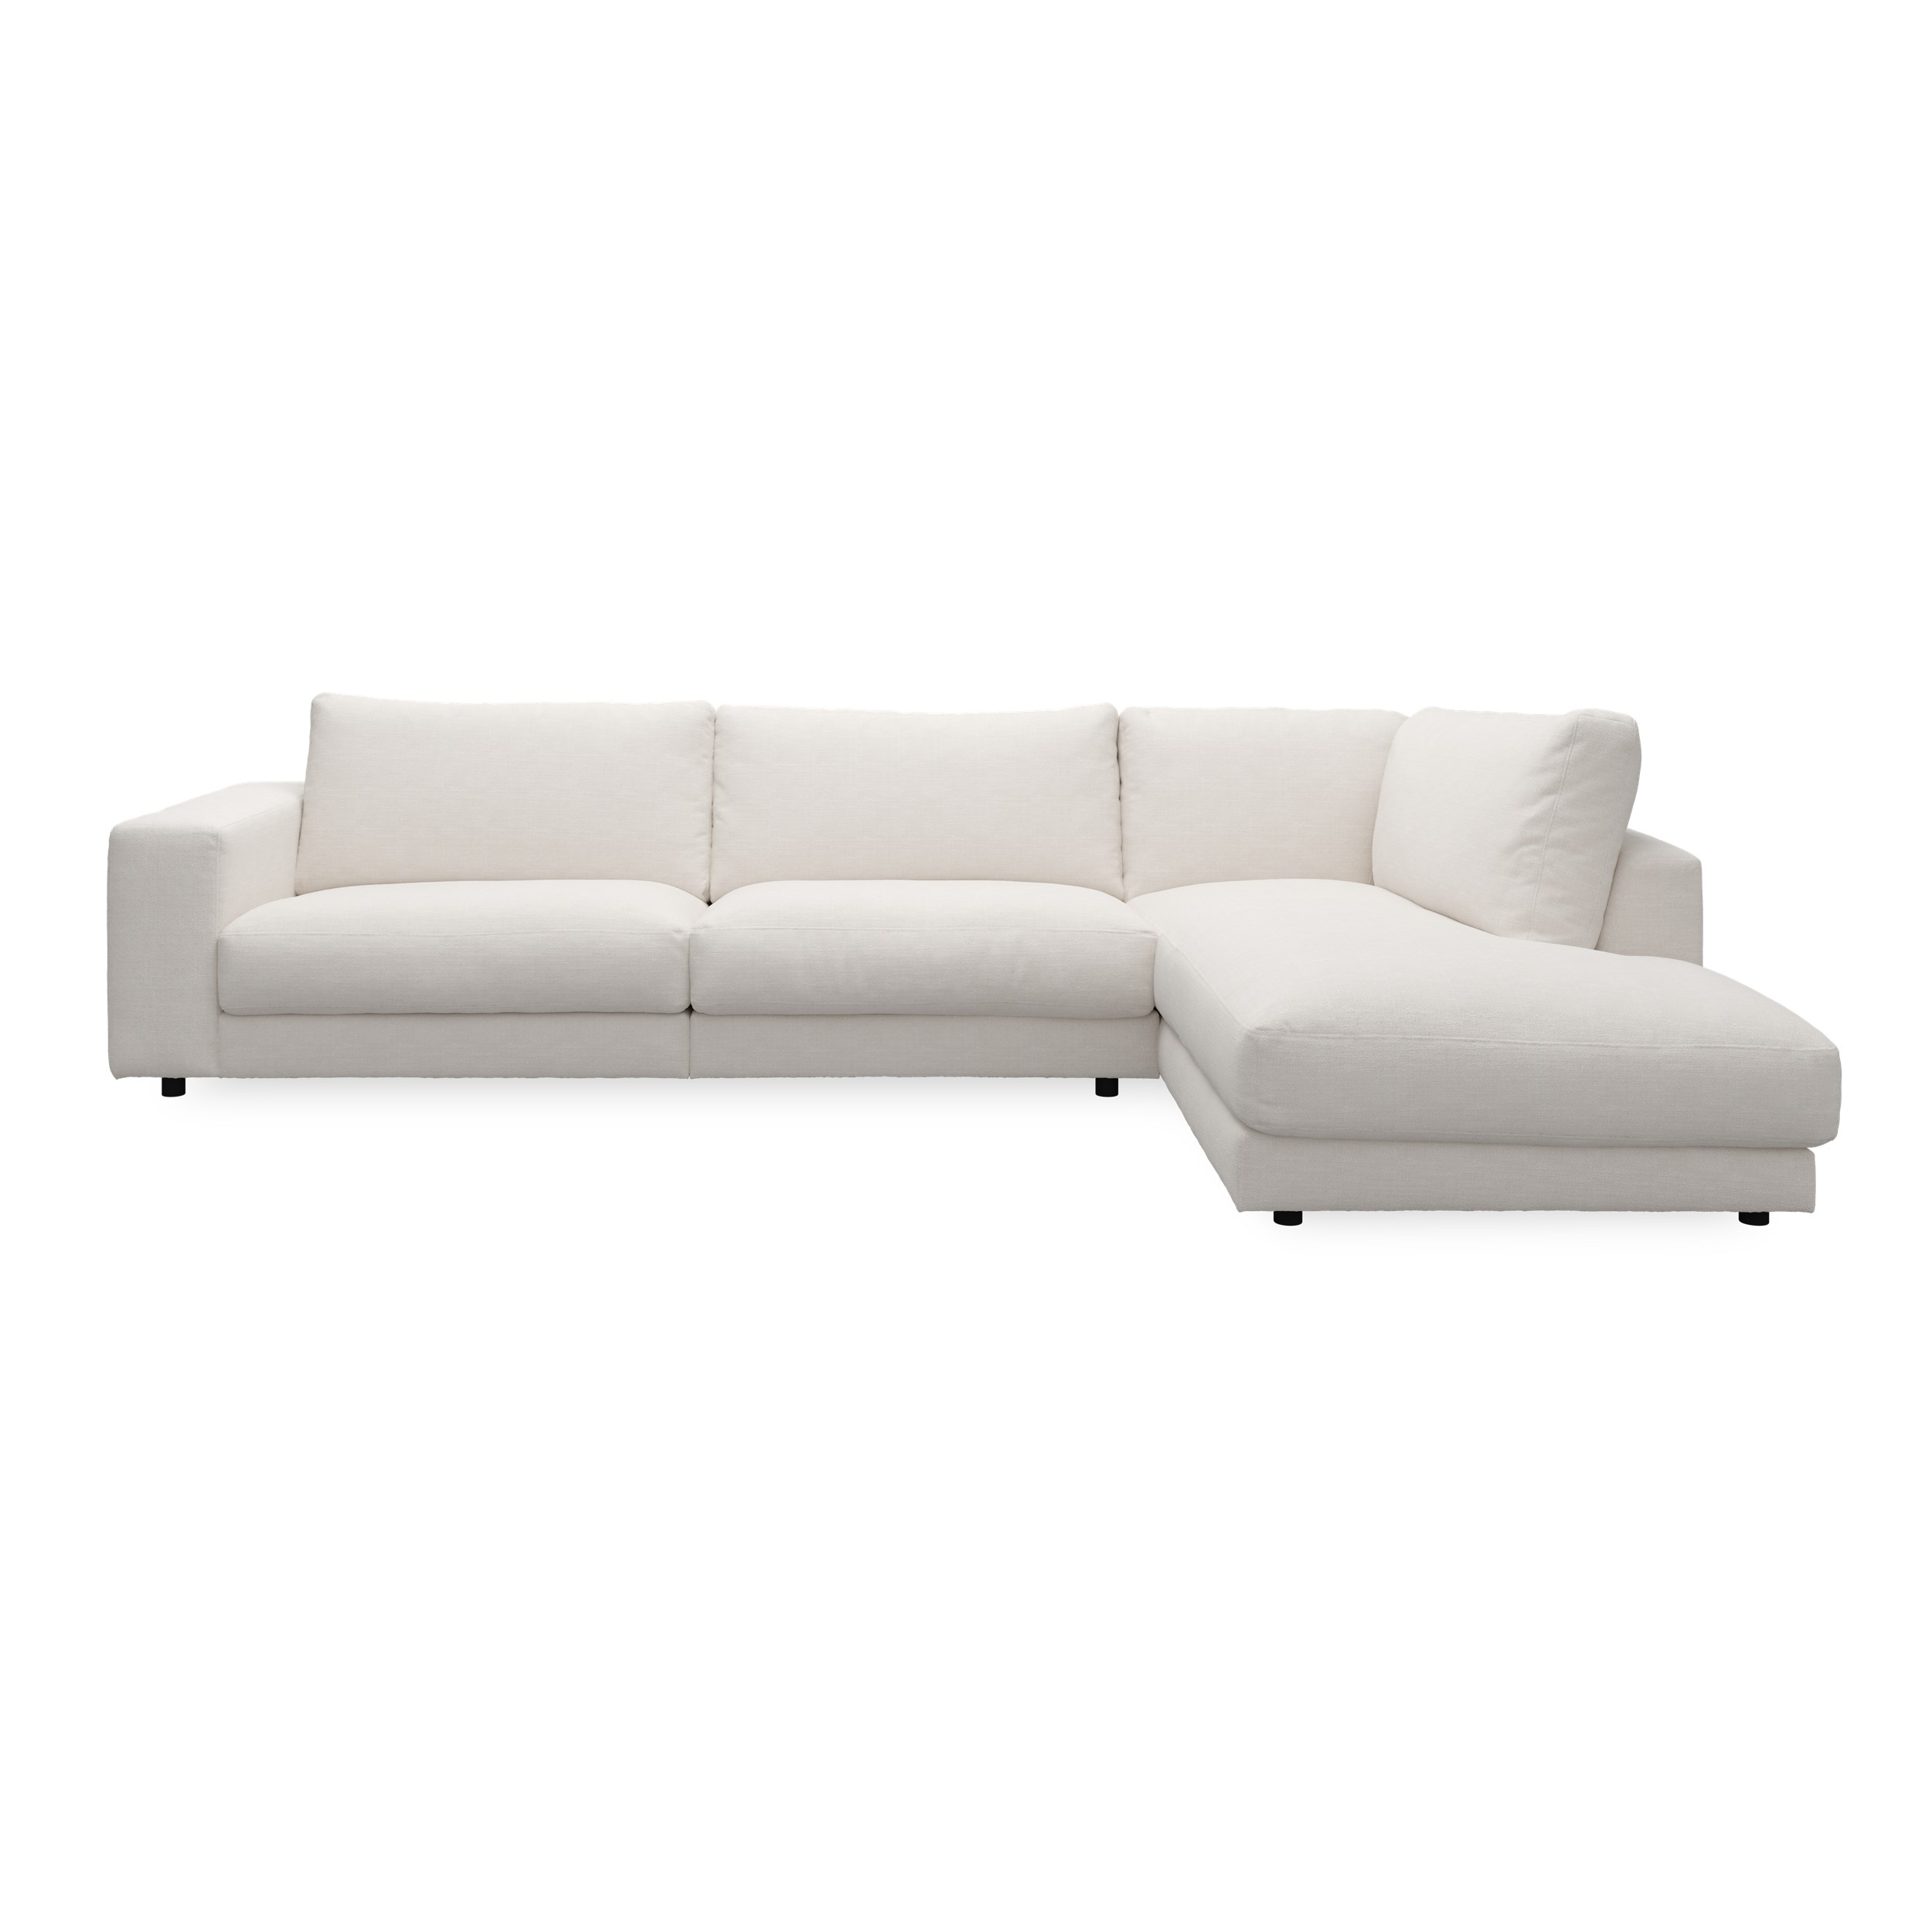 Bennent högervänd soffa med divan - Picasso Natur klädsel, ben i svart plast och S:skum/fib/din/sili R:Dun/skum